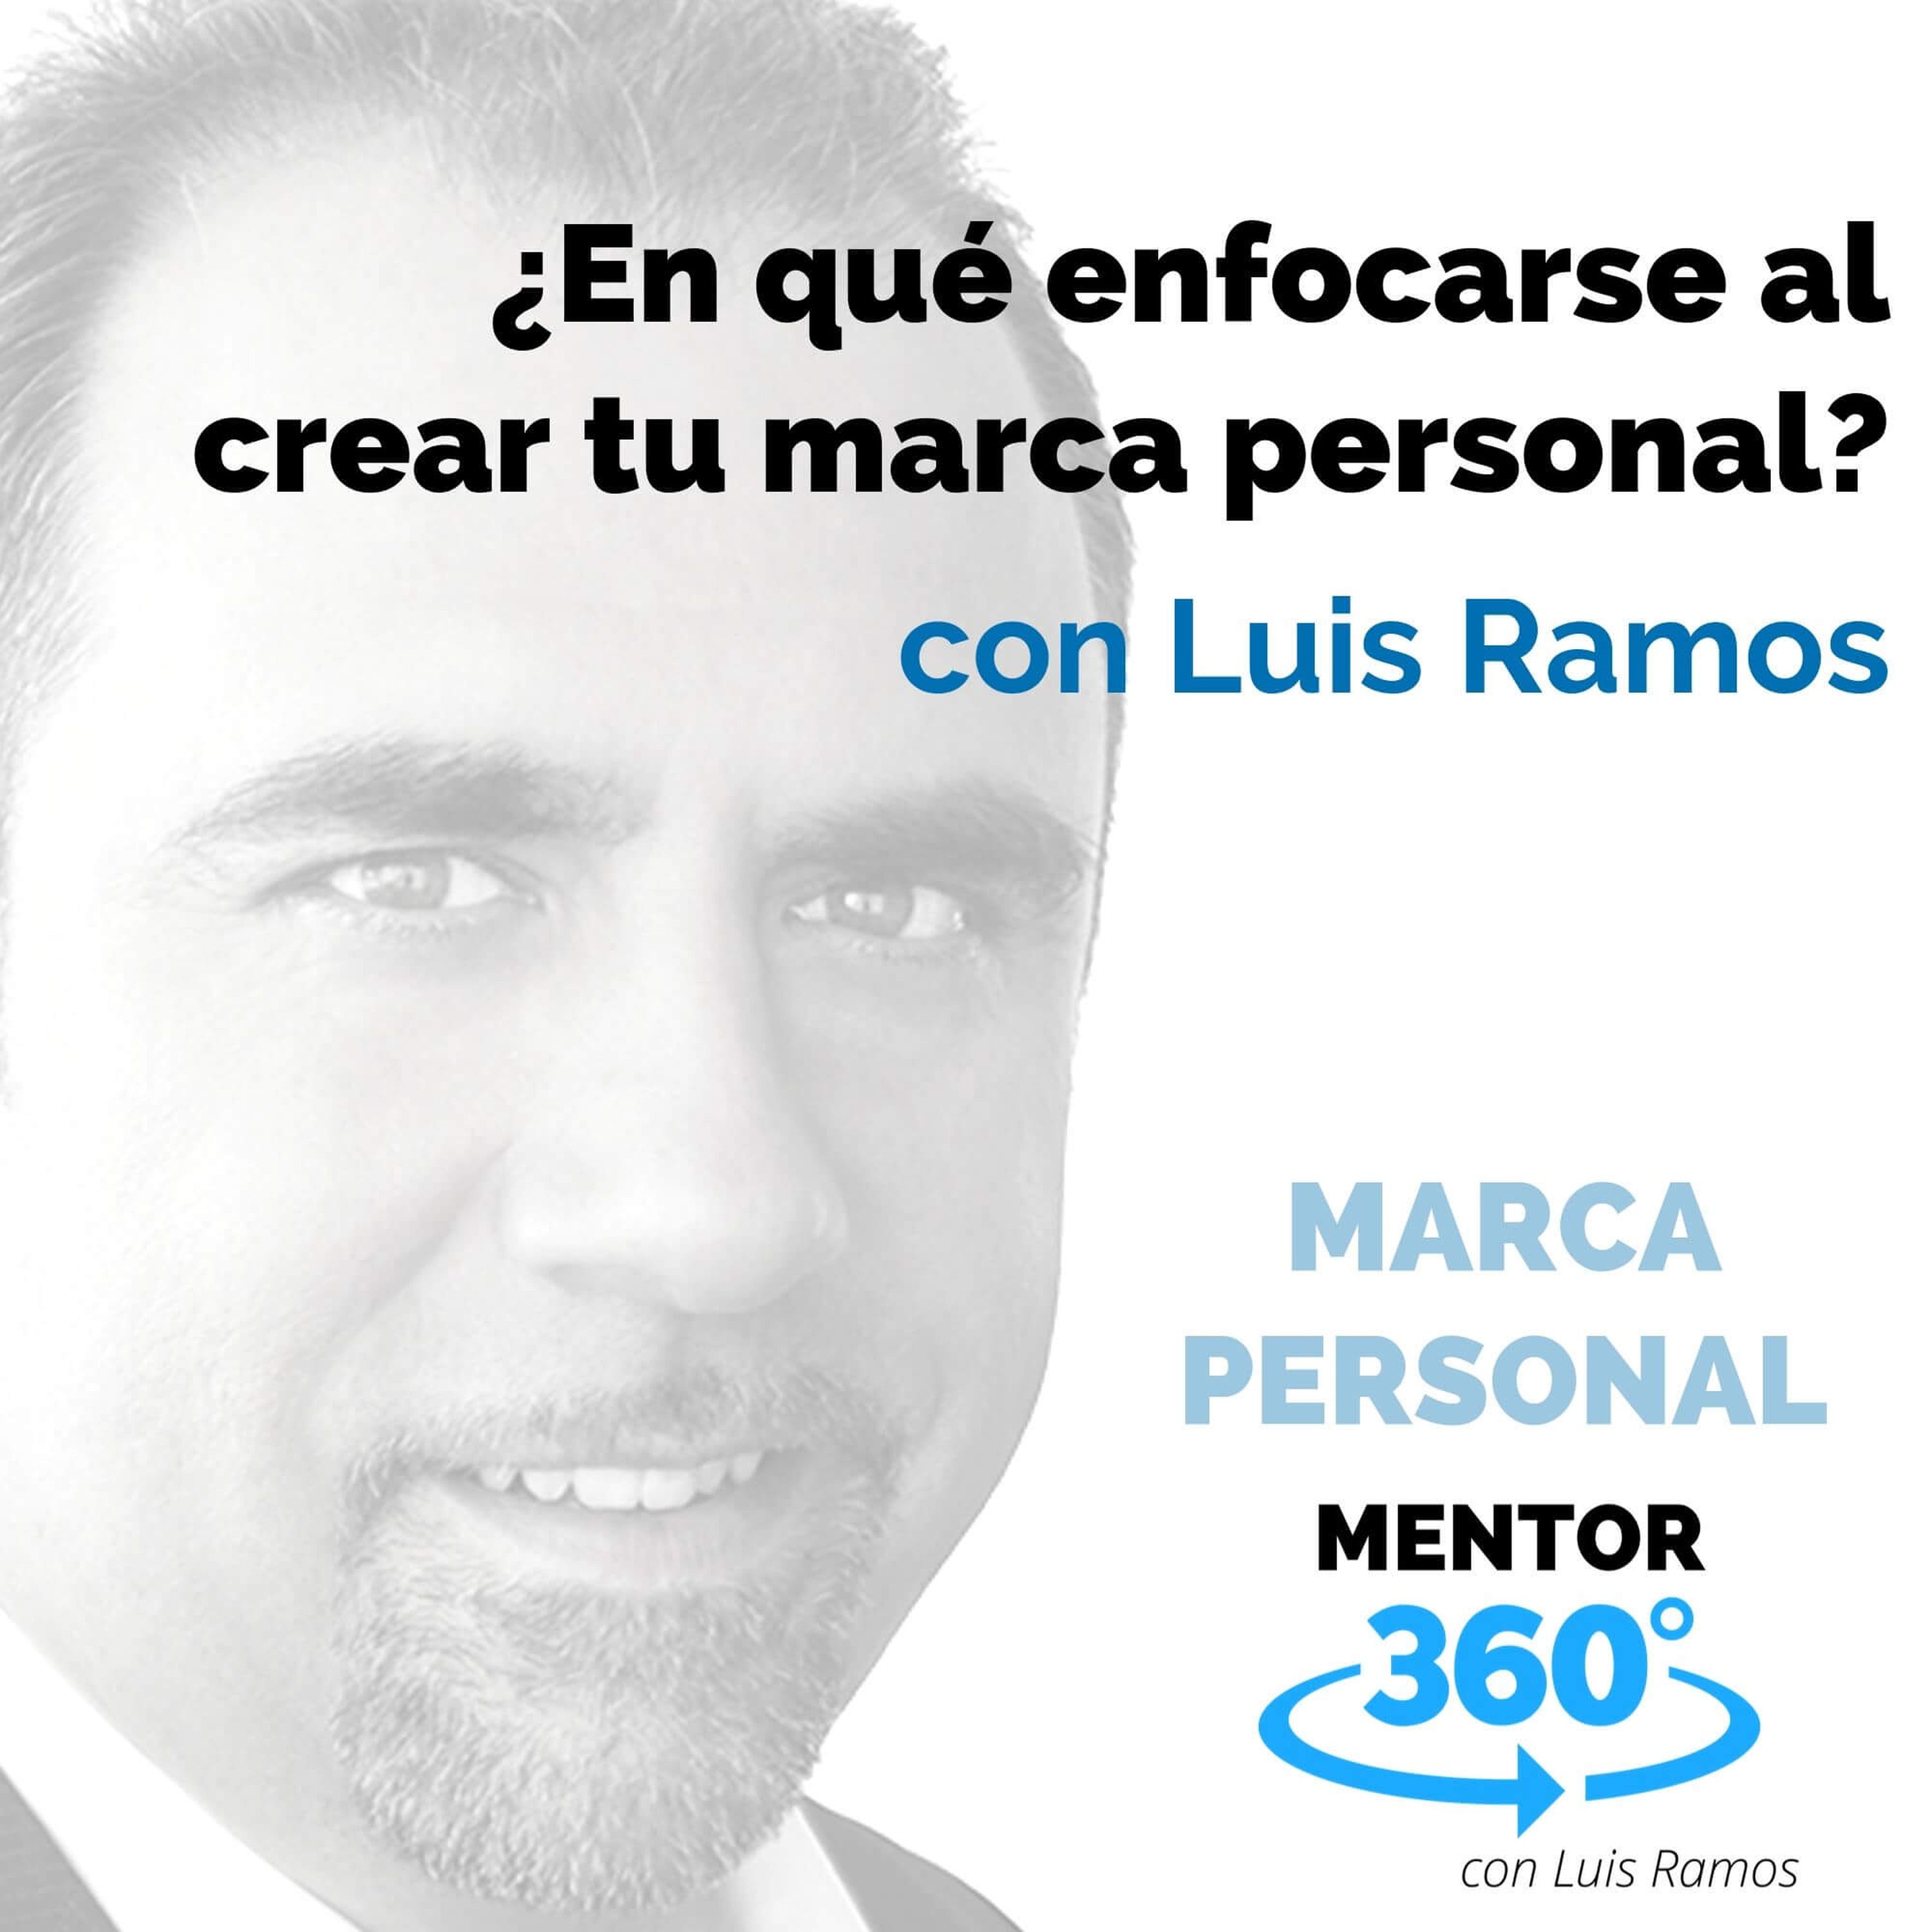 ¿En qué enfocarse primero al crear tu marca personal?, con Luis Ramos - MARCA PERSONAL